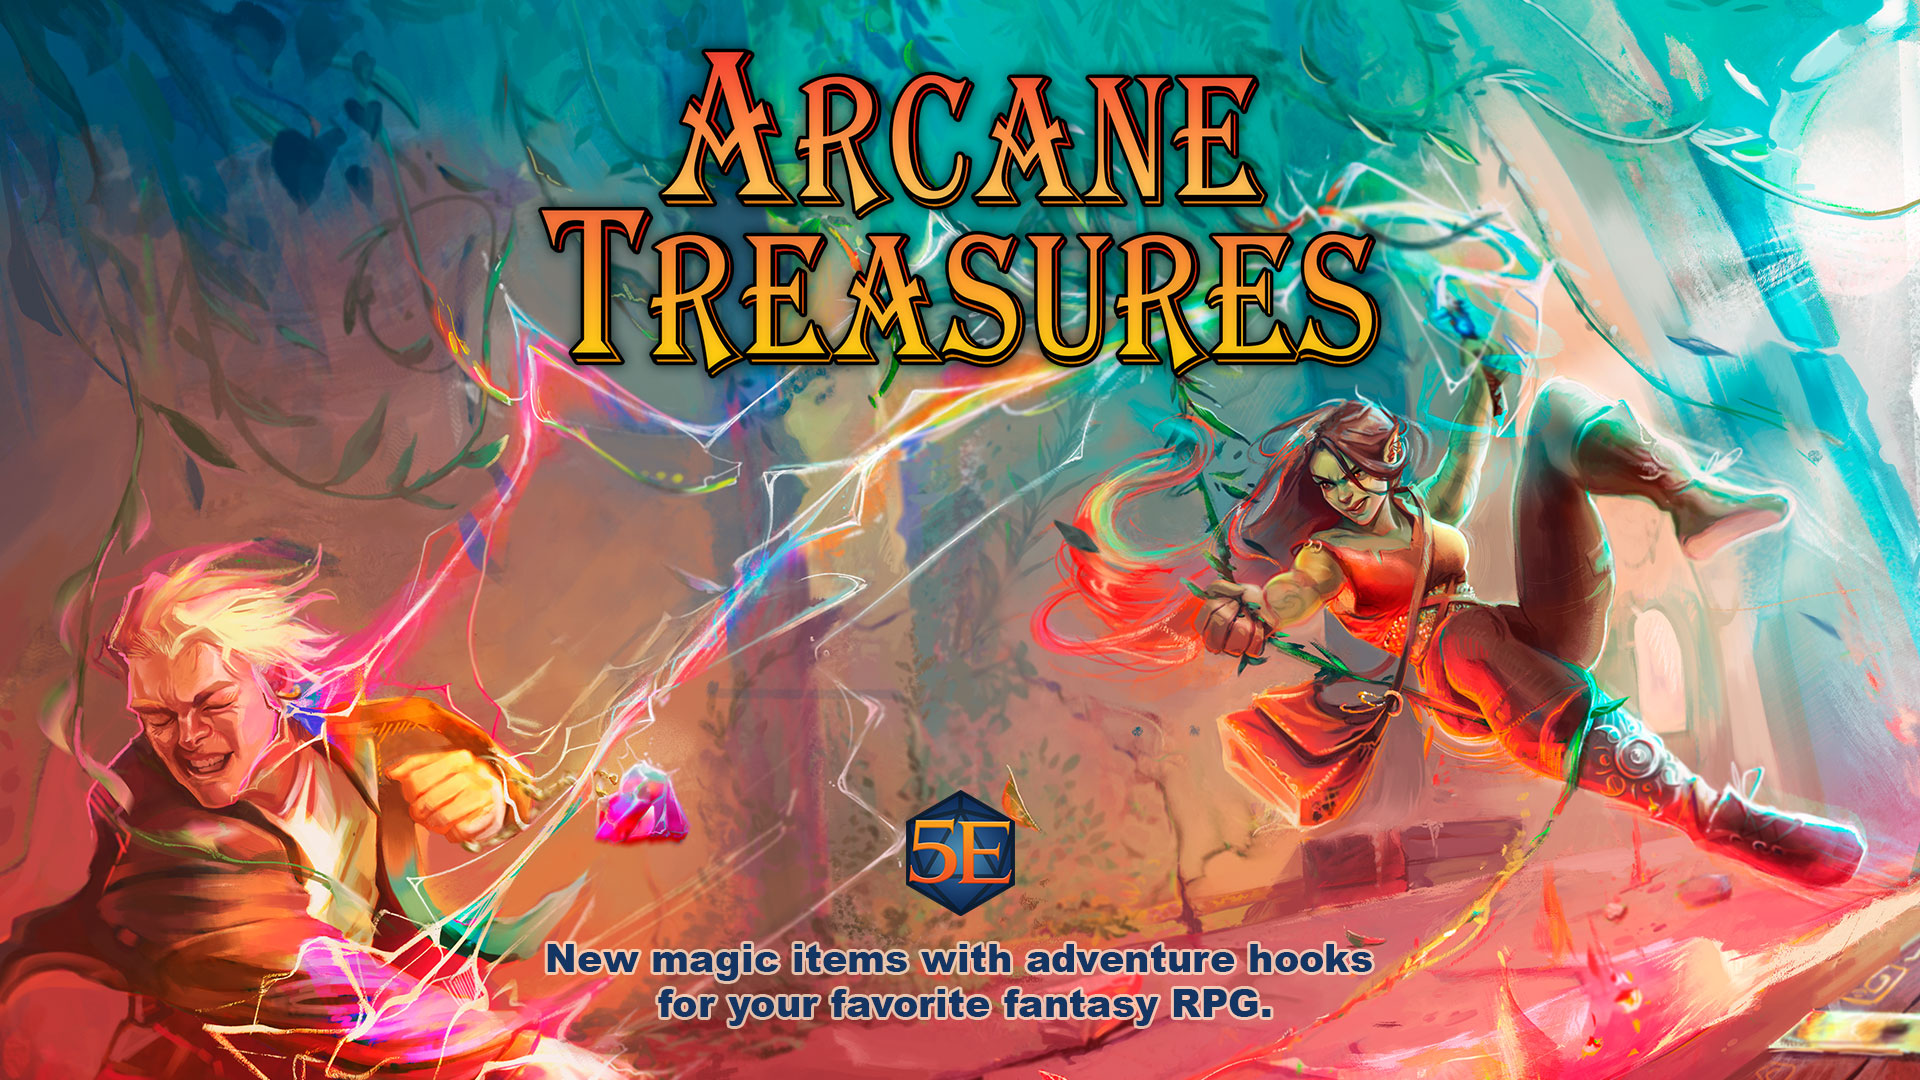 Arcane Treasures is now on Kickstarter